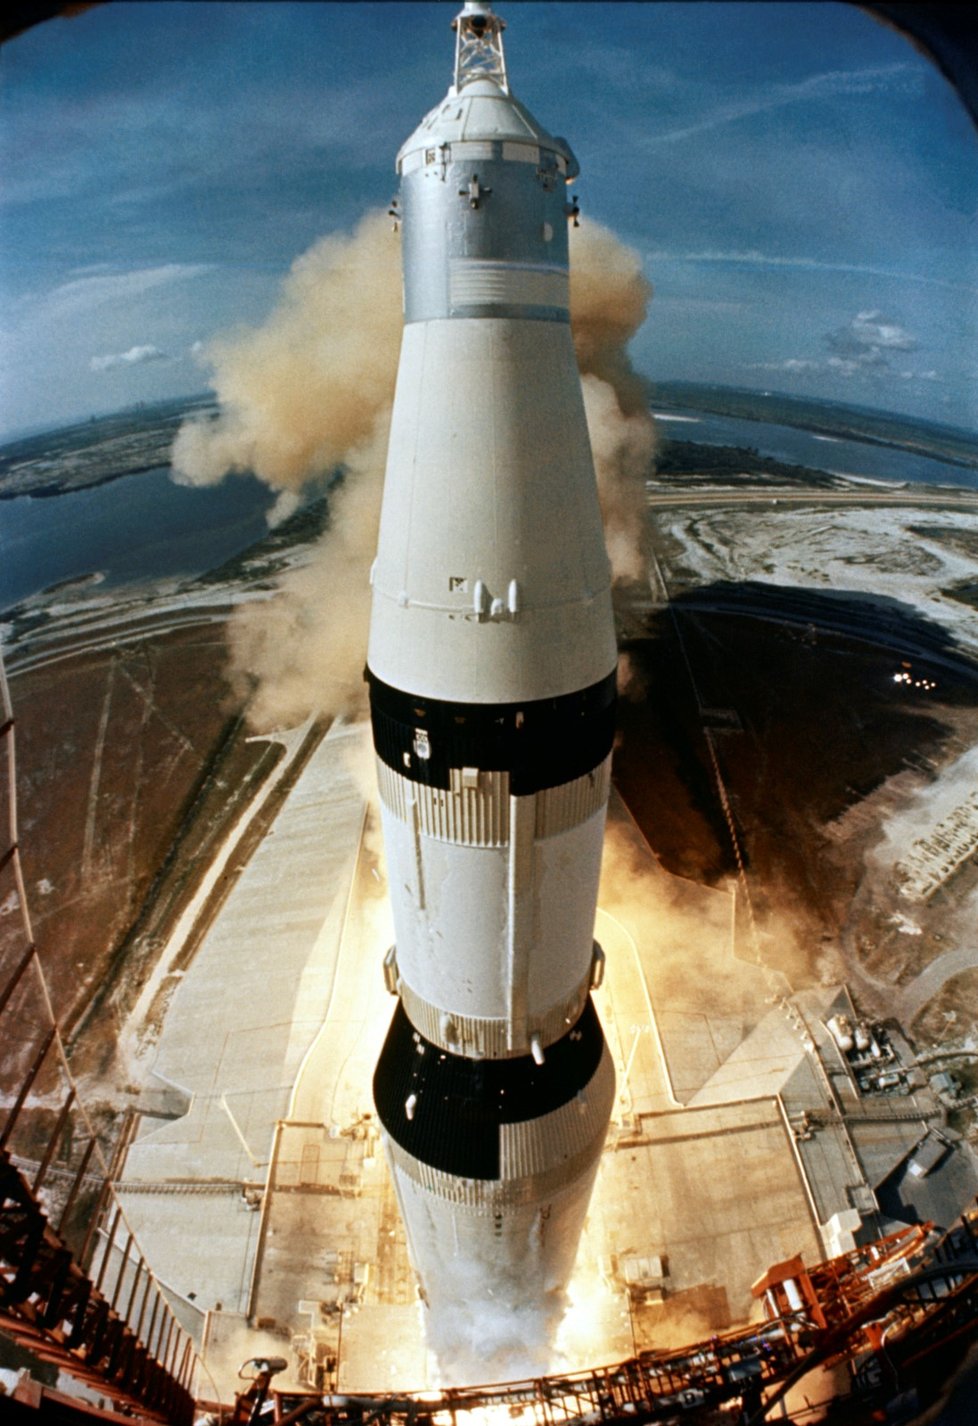 Spojené státy slaví 50. výročí přistání na Měsíci. Oslav se účastní i astronauti Buzz Aldrin a Michael Collins, kteří byli na palubě legendárního letu Apolla 11. Jejich kolega Neil Armstrong, který jako první vstoupil na měsíční povrch, zemřel v roce 2012.